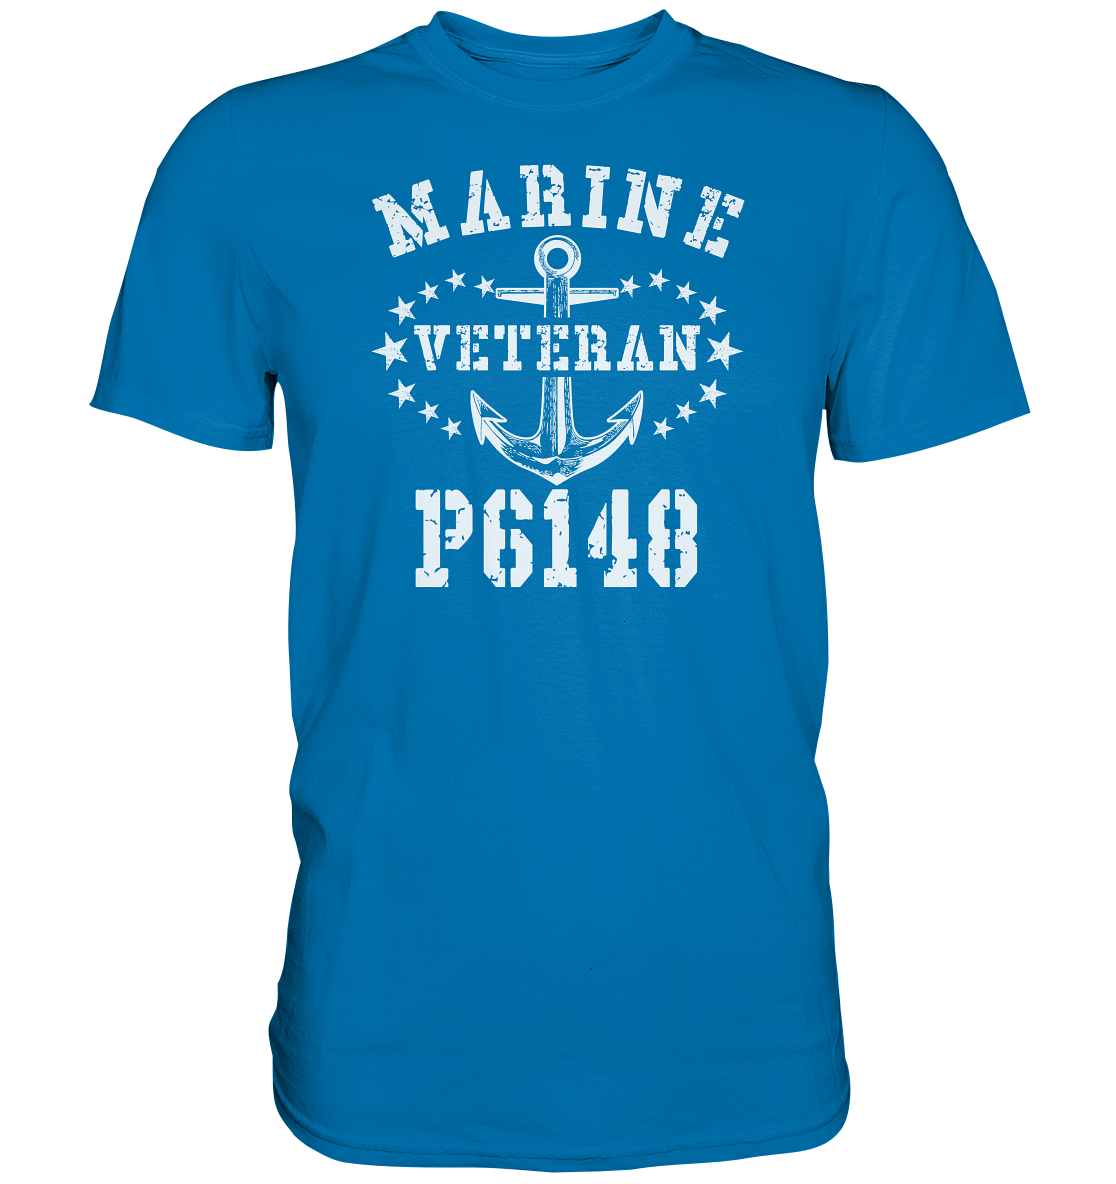 Veteran P6148 - Premium Shirt